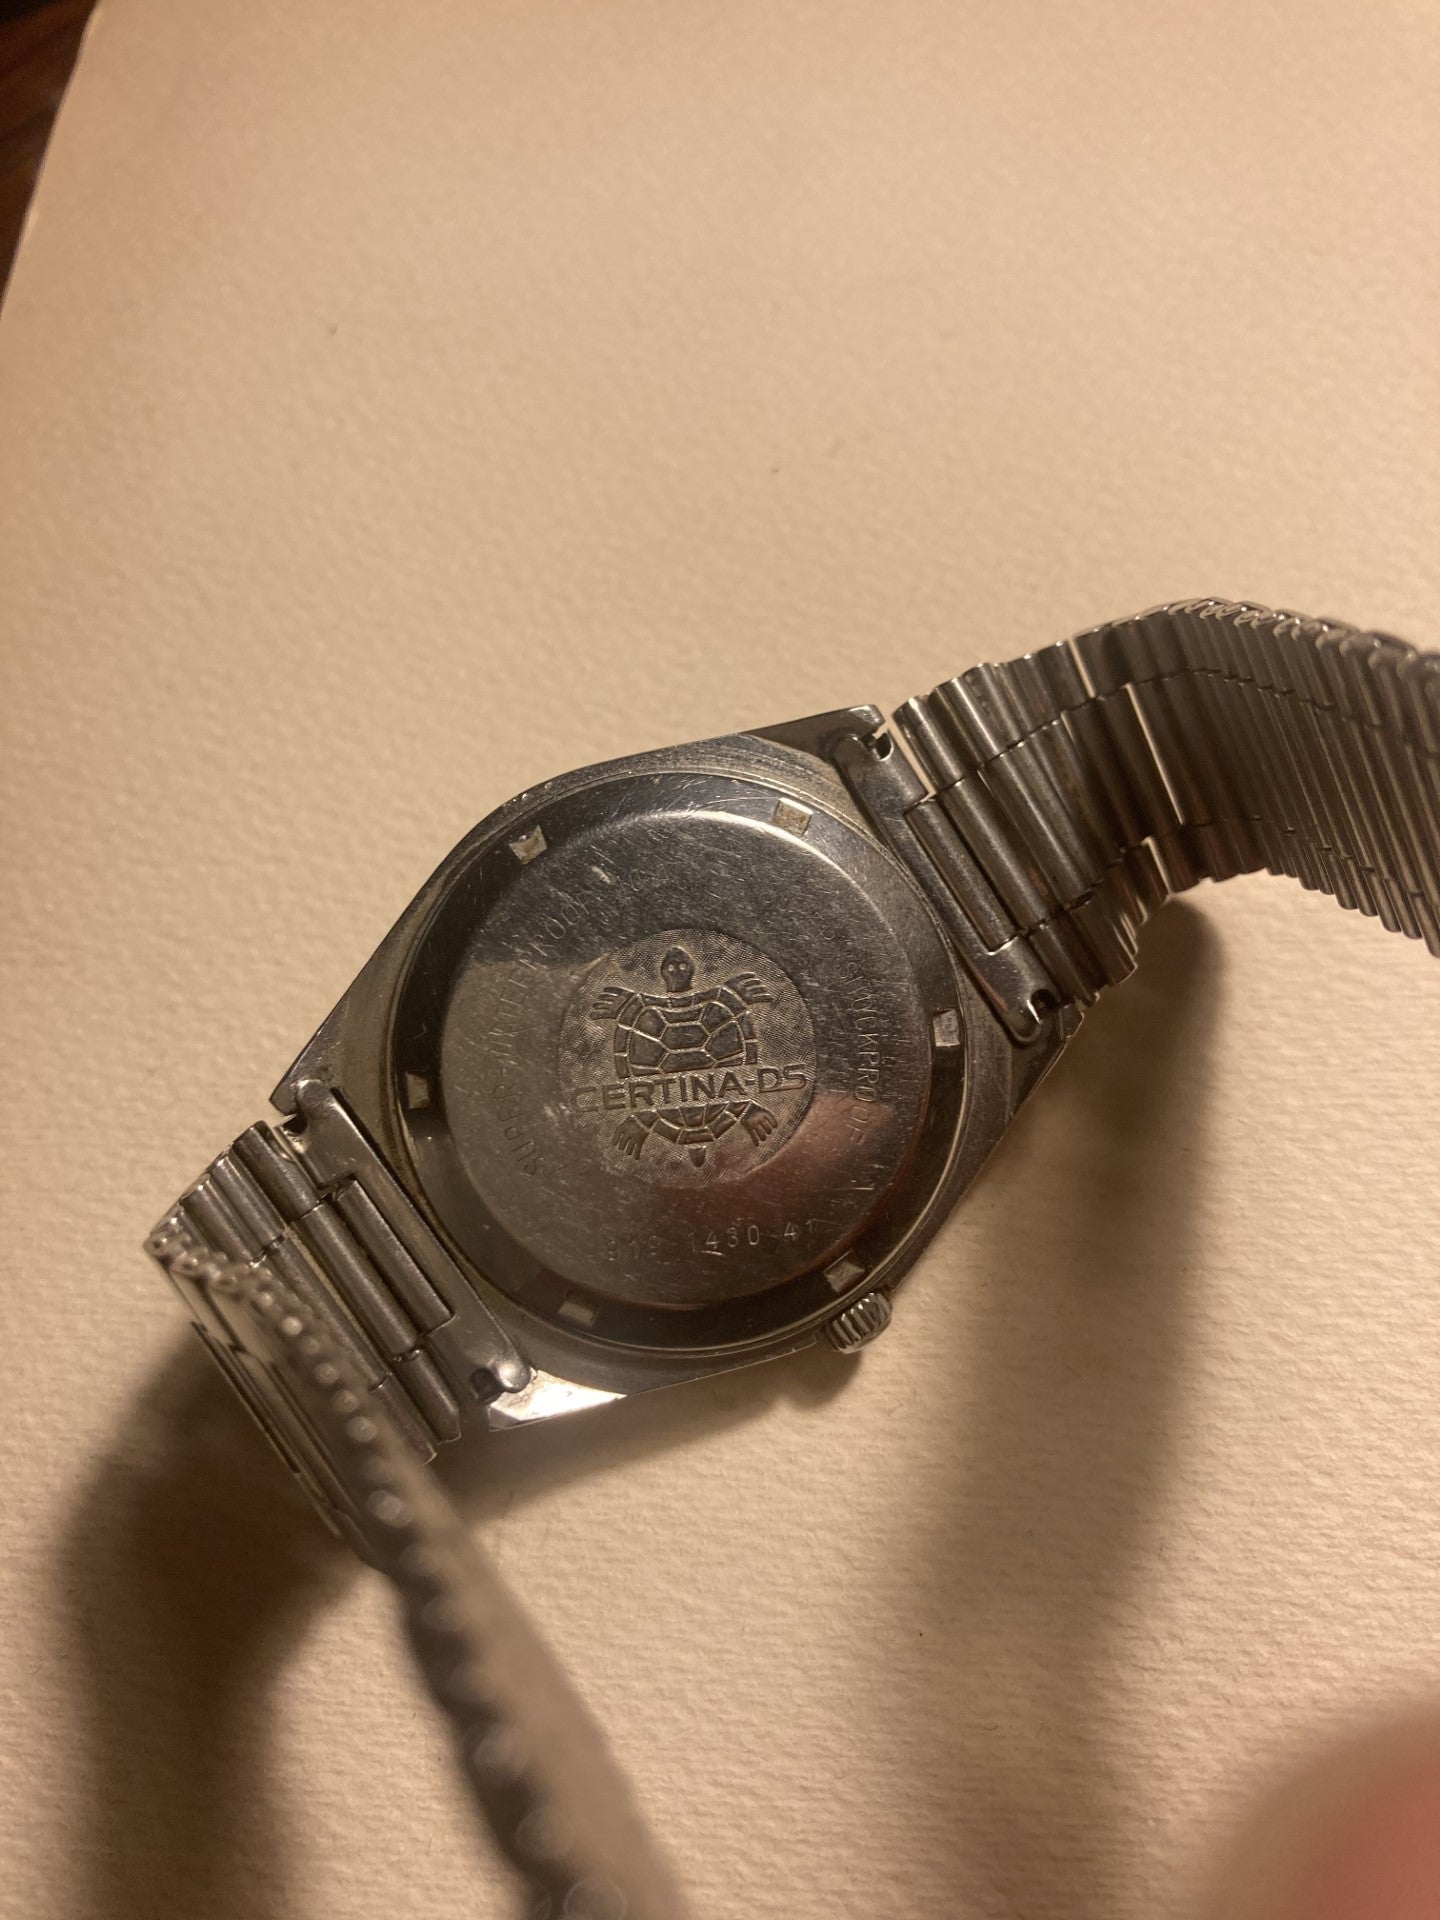 Certina オートマチック Ds-4 メンズ腕時計、素晴らしい状態 - no. 01057